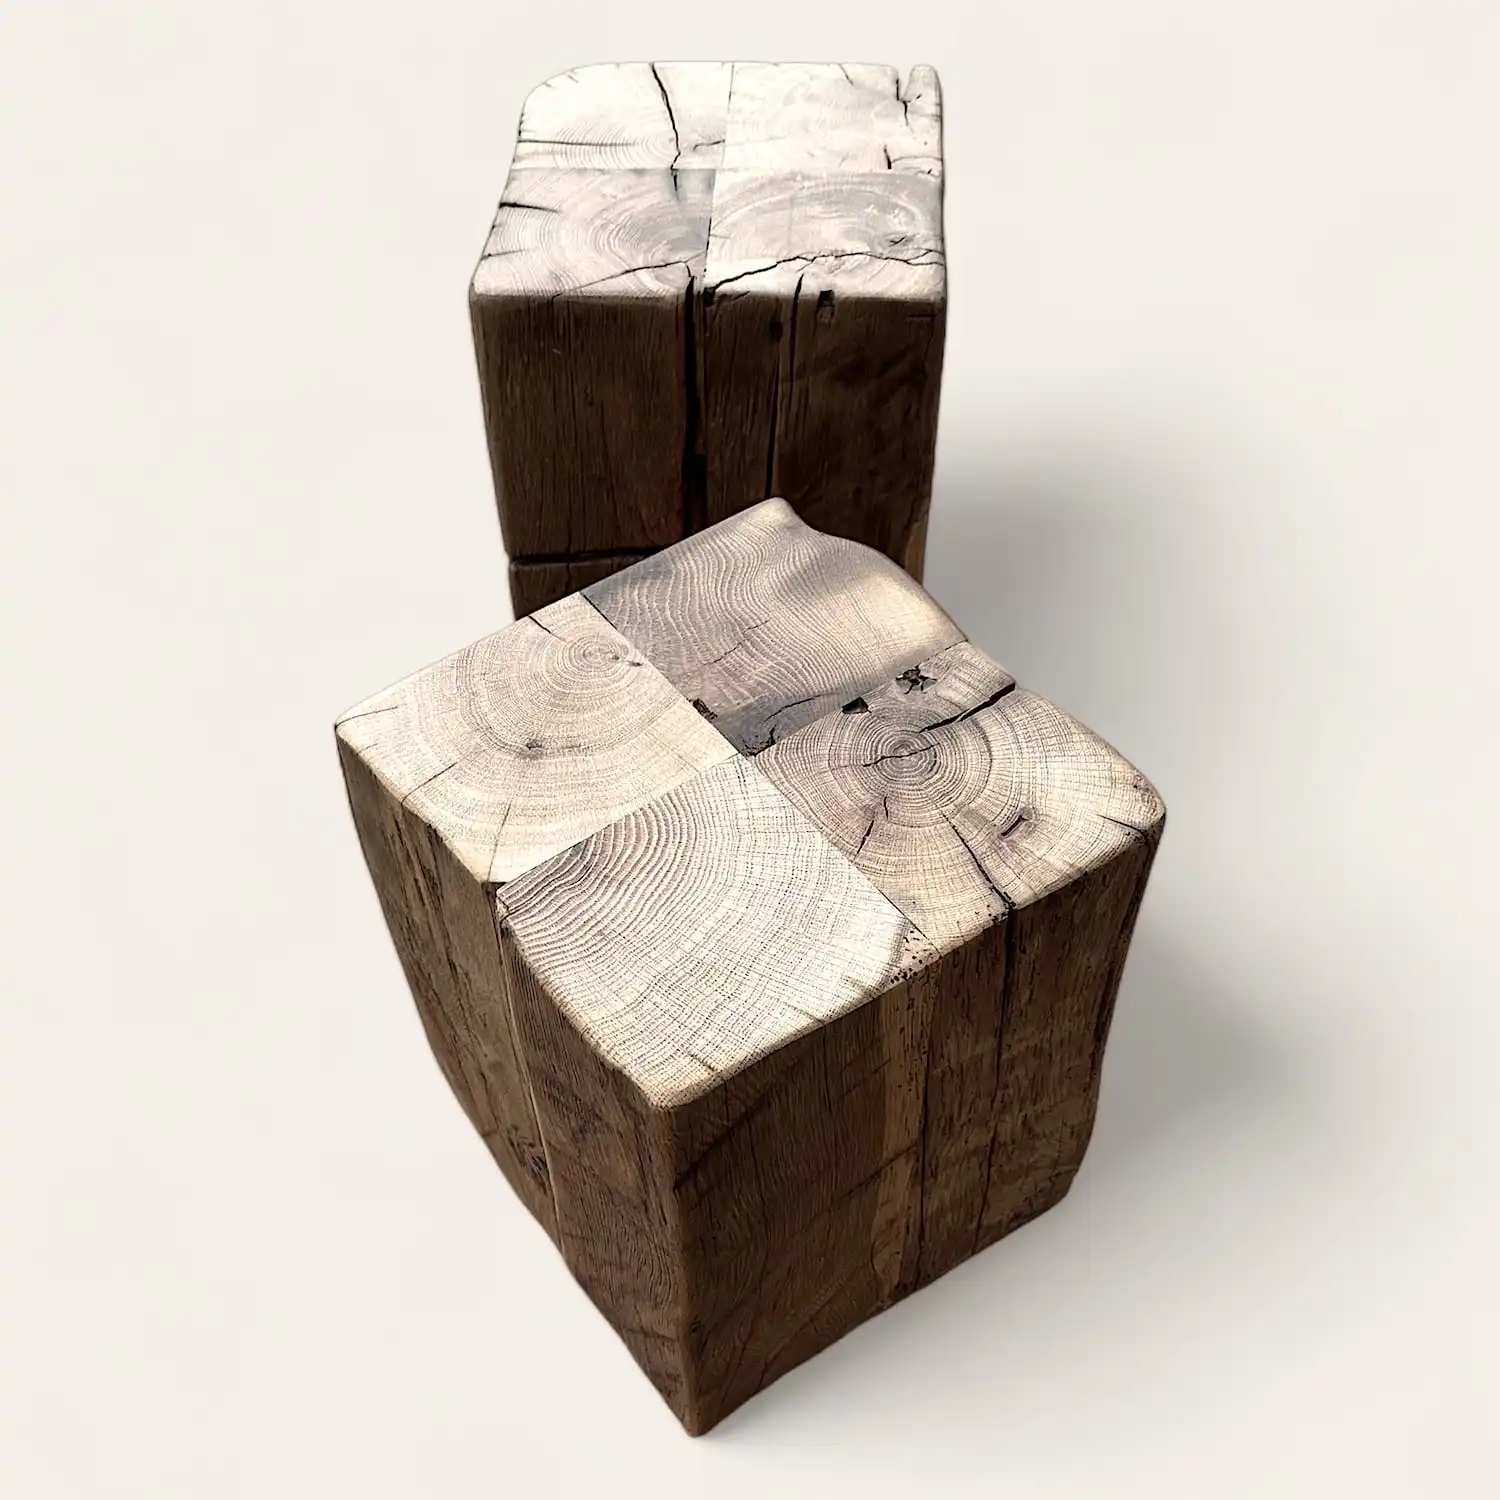  Deux cubes en bois ancien présentant des fissures. 